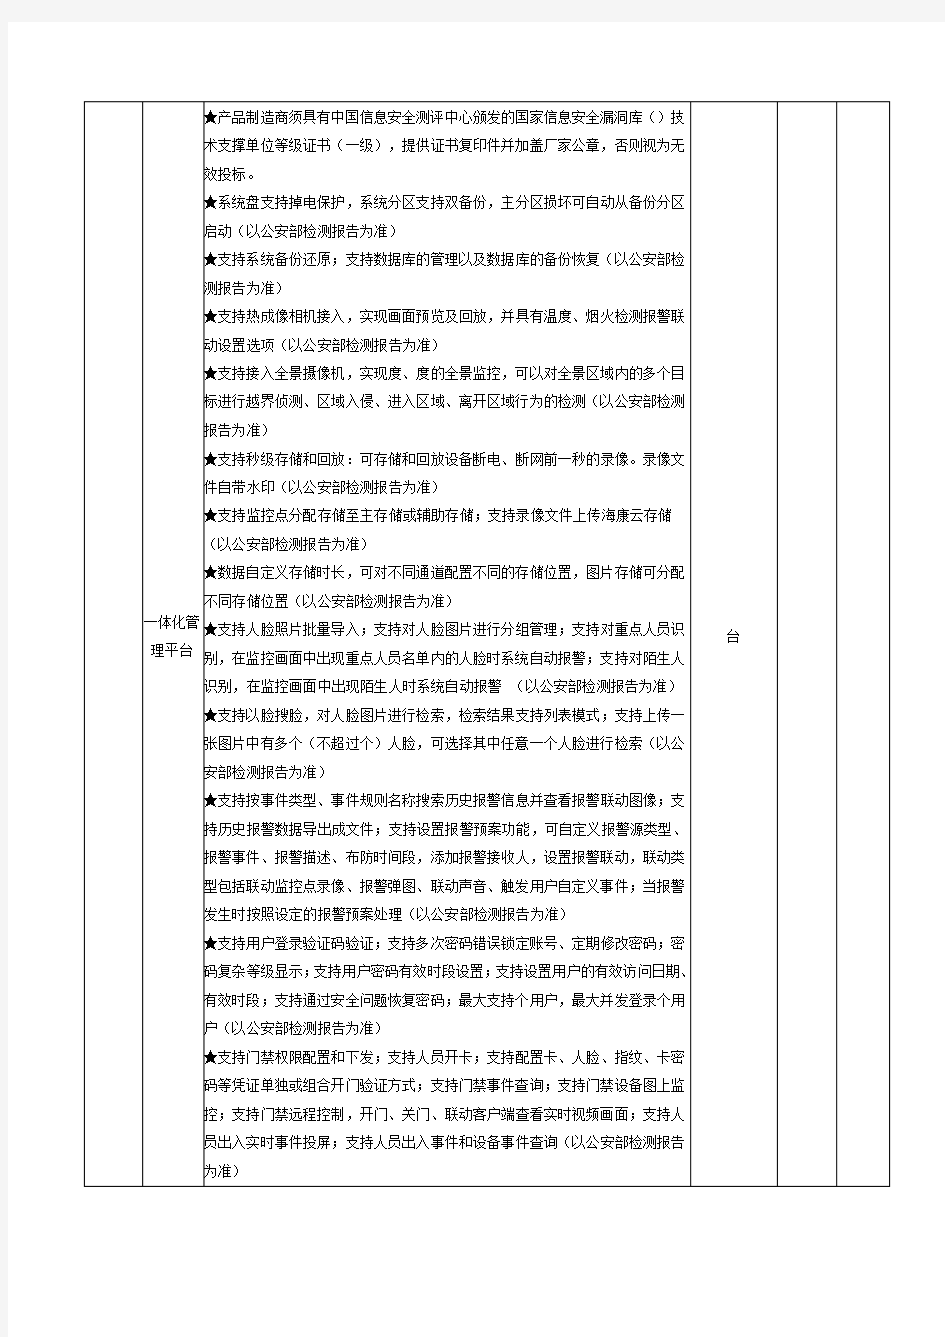 淮滨县教体局平安校园高清视频监控系统管理平台配置项目采